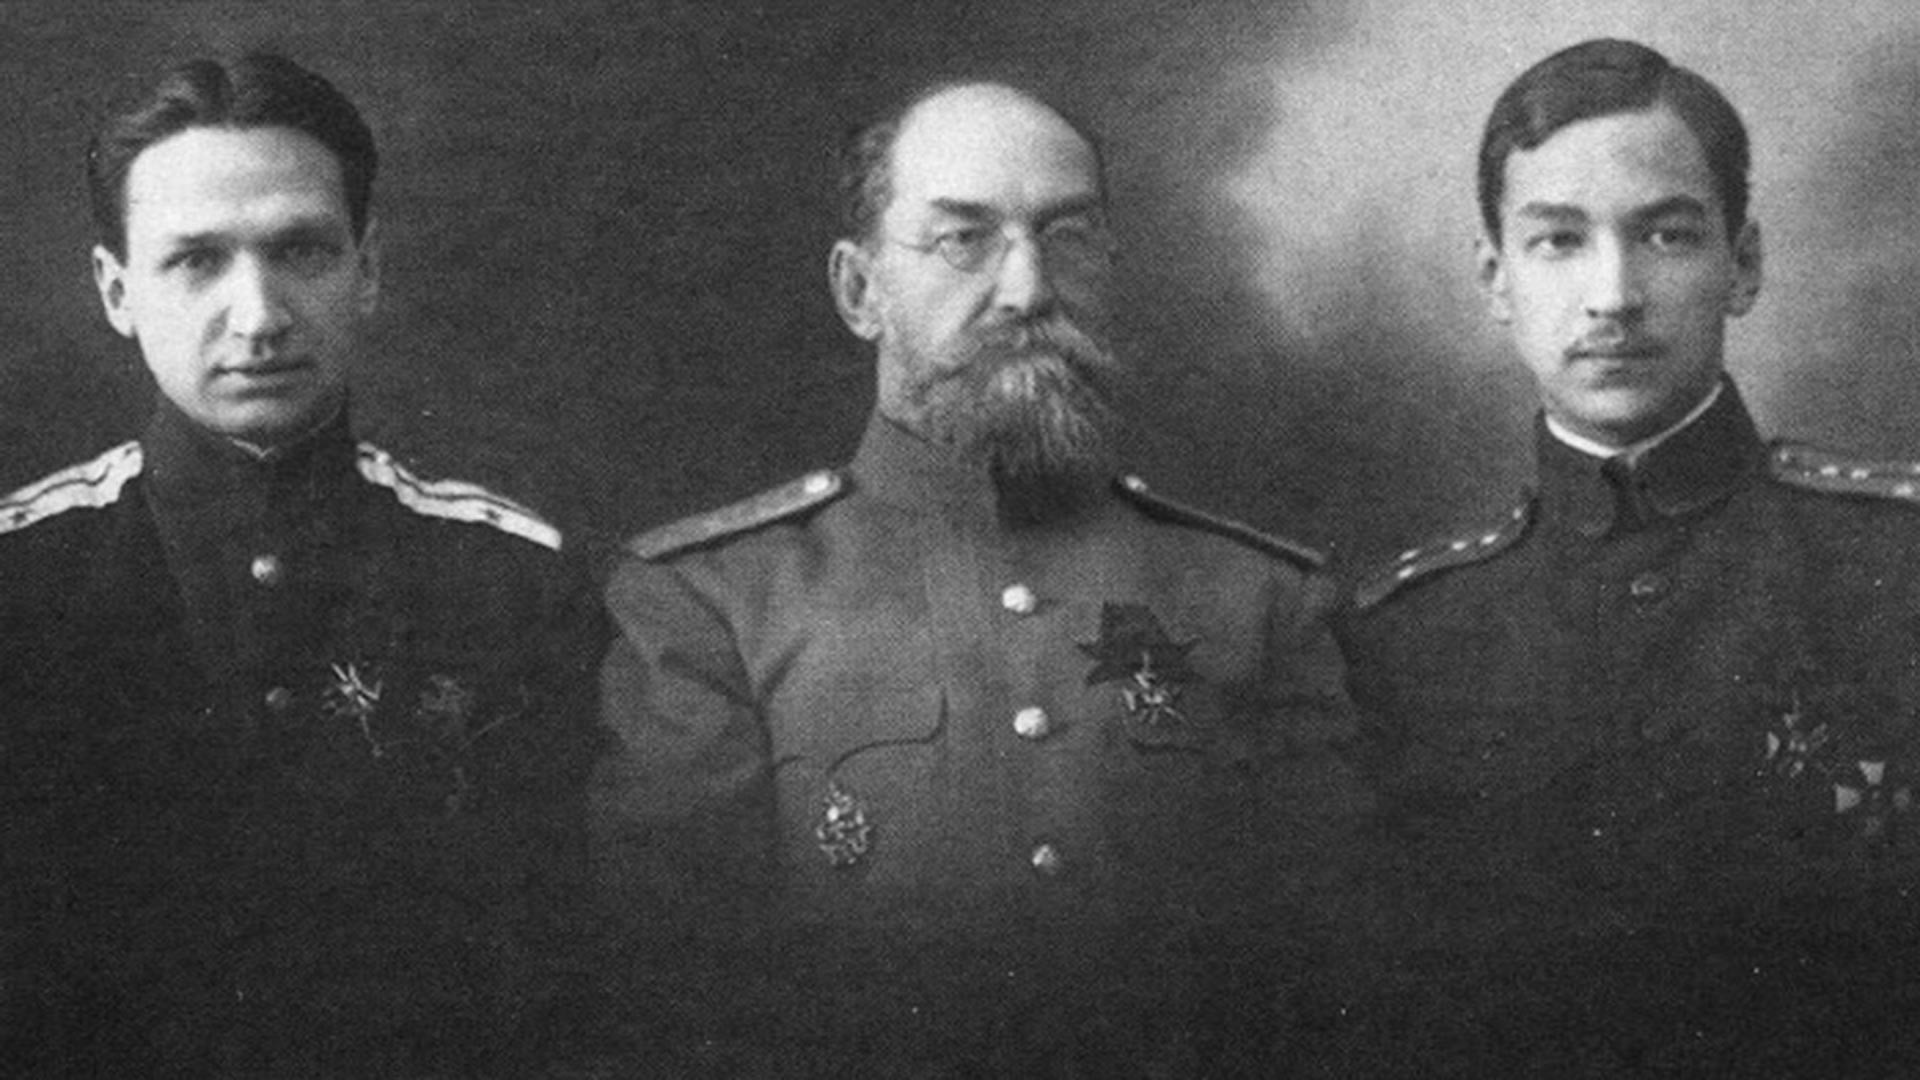 Le chef d'état-major, le capitaine Alexandre Pounine, le général de division Nikolaï Pounine et le capitaine d'état-major Lev Pounine.